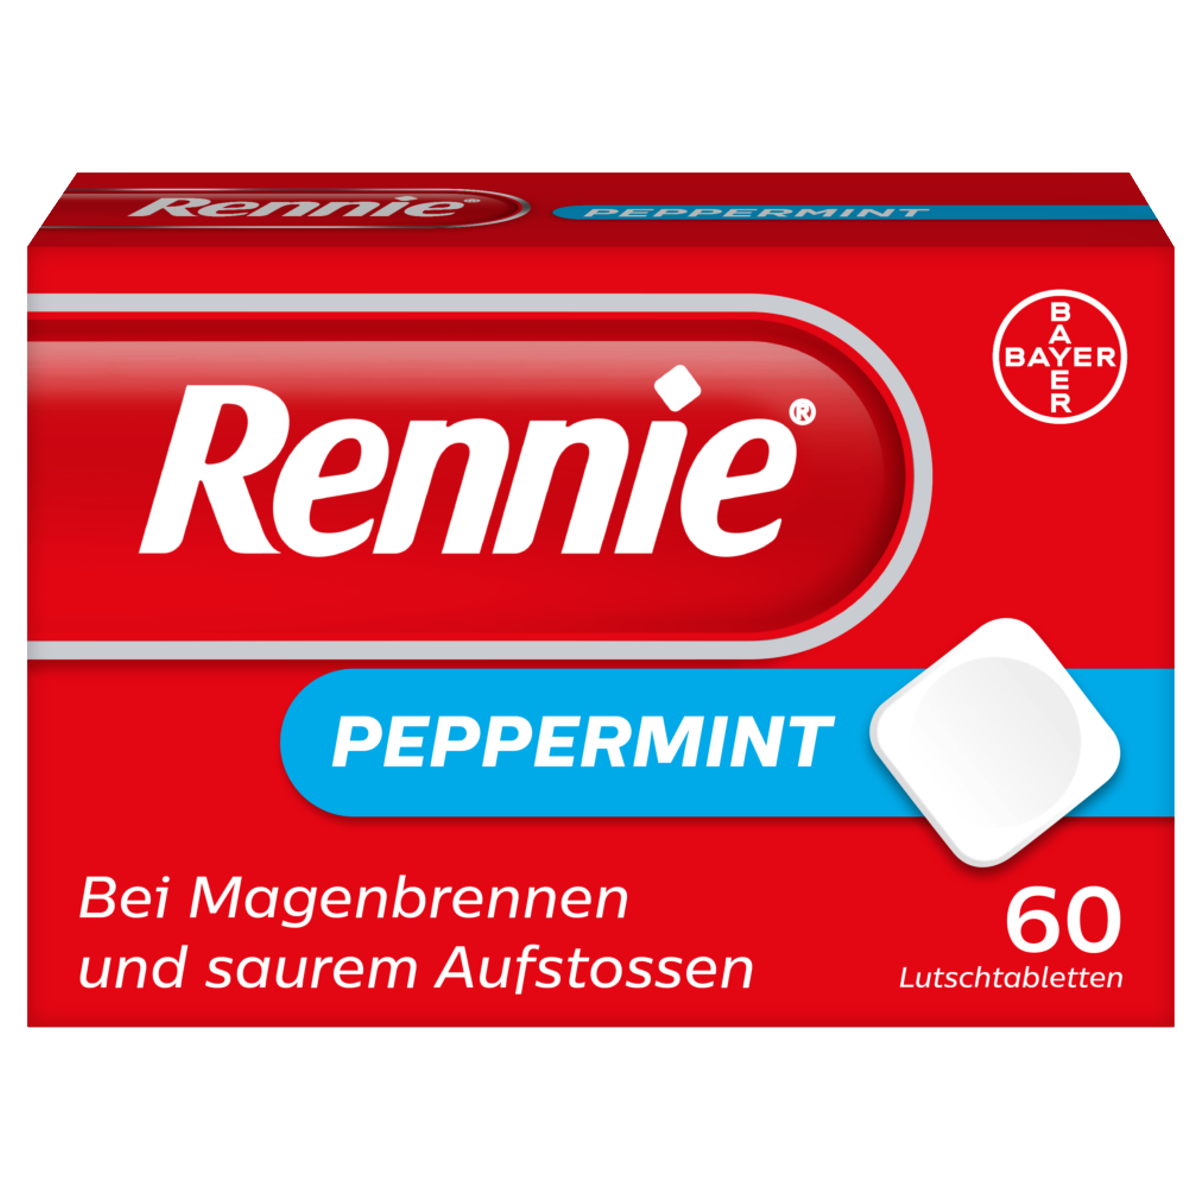 Rennie Peppermint Lutschtabletten 60 Stück